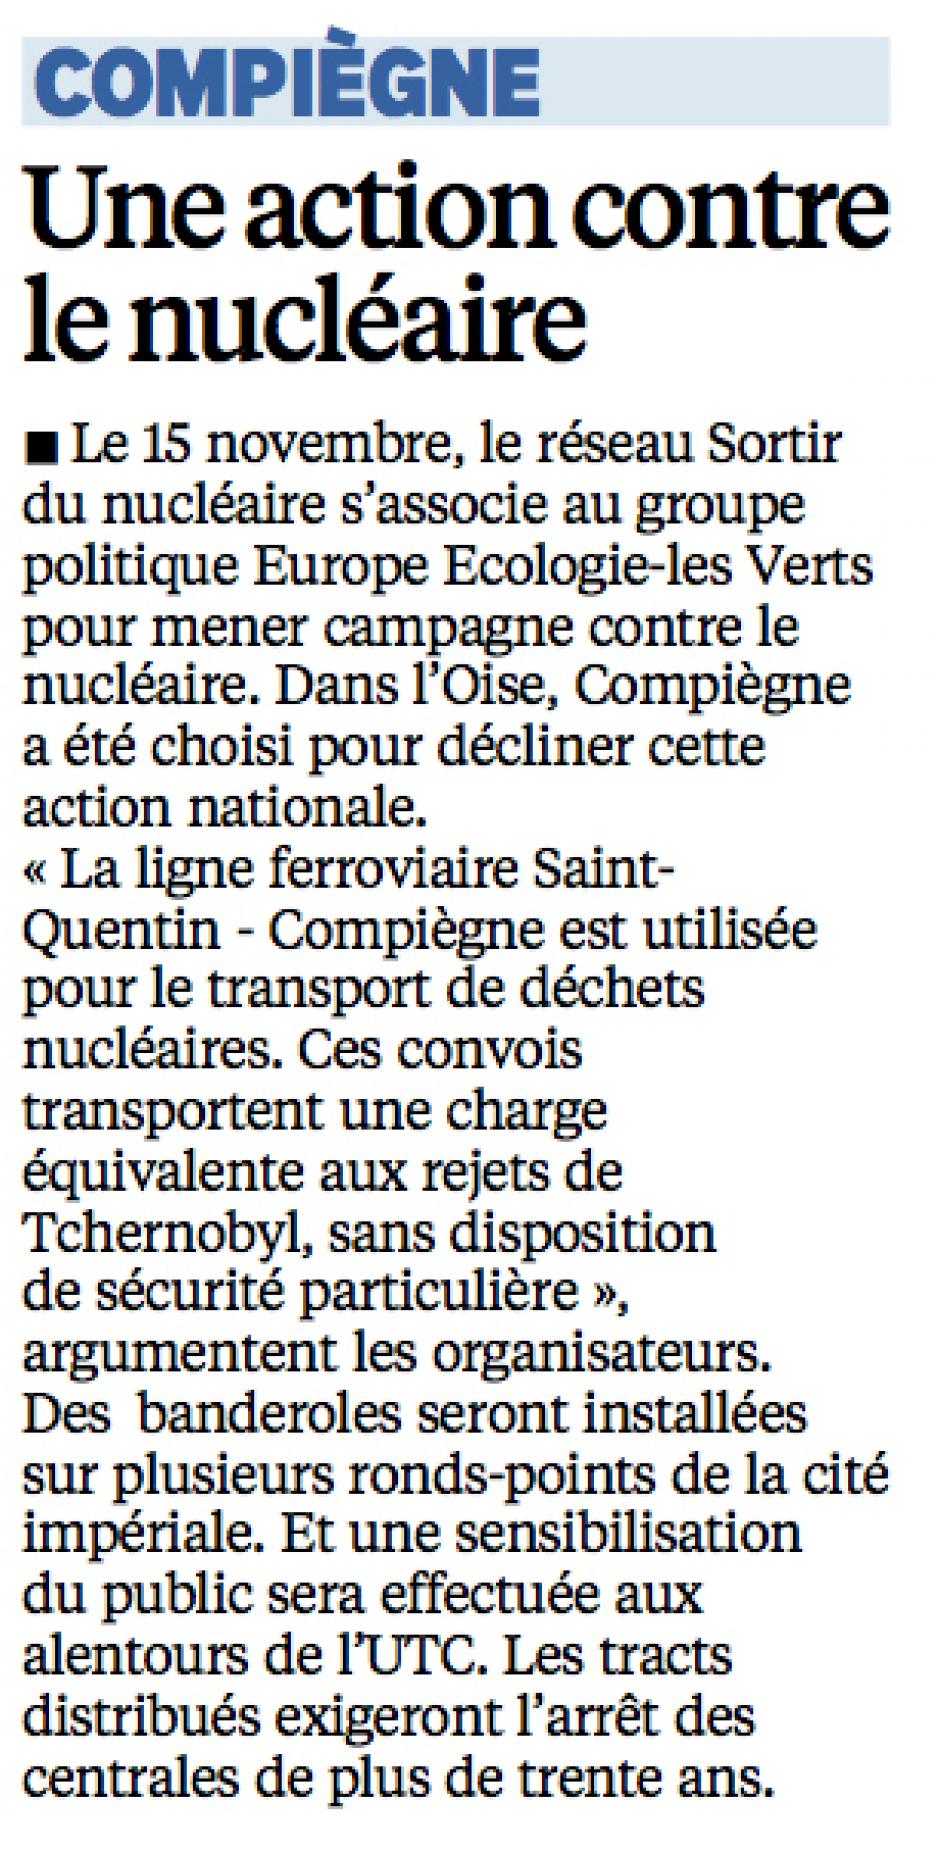 20141104-LeP-Compiègne-Une action contre le nucléaire